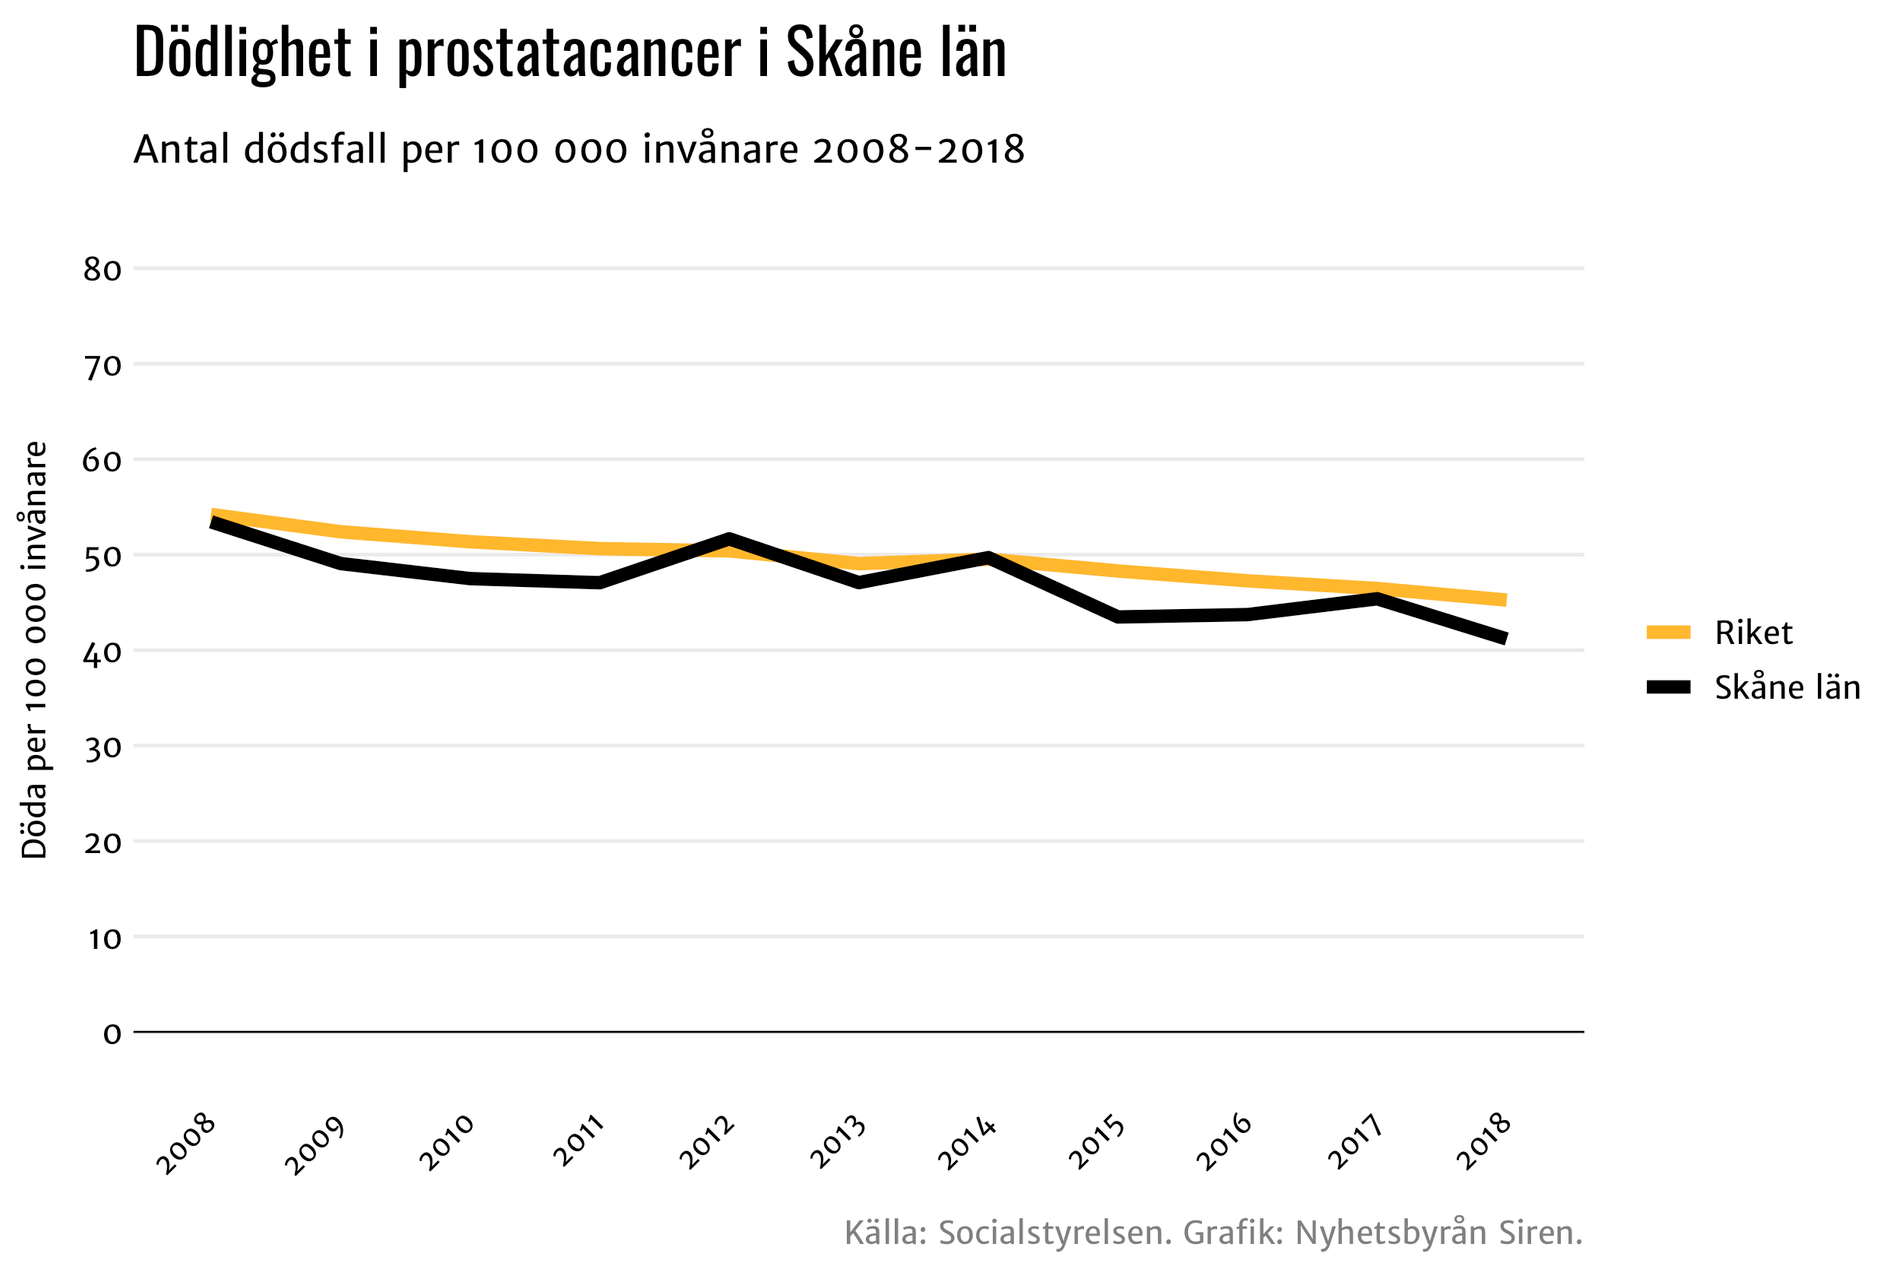 Dödligheten i prostatacancer sjunker snabbare i Skåne än riksgenomsnittet.